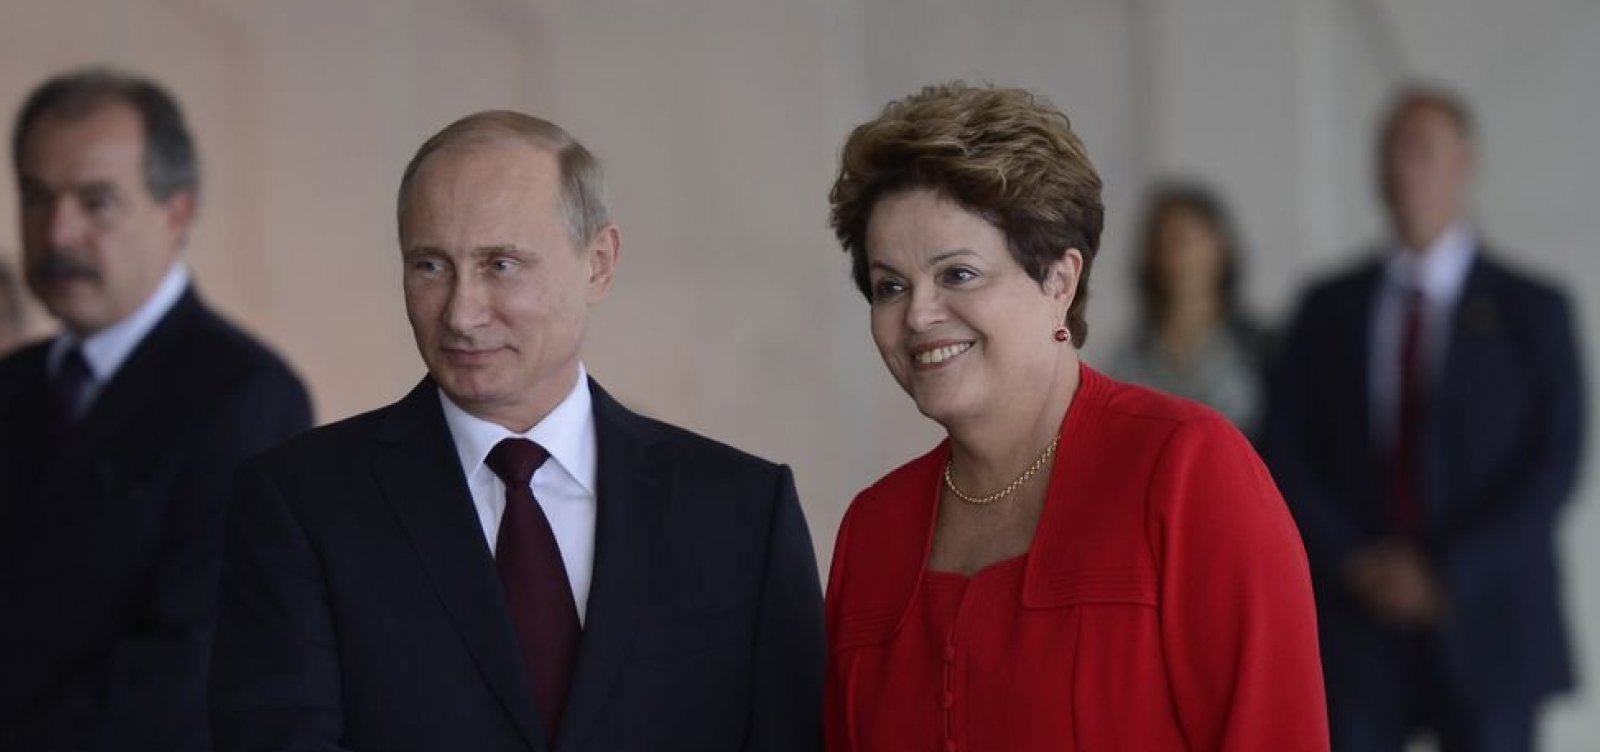 Presidenta Dilma Rousseff durante encontro privado com o Presidente da Federação  Russa, Vladimir Putin. Moscou - Rússia